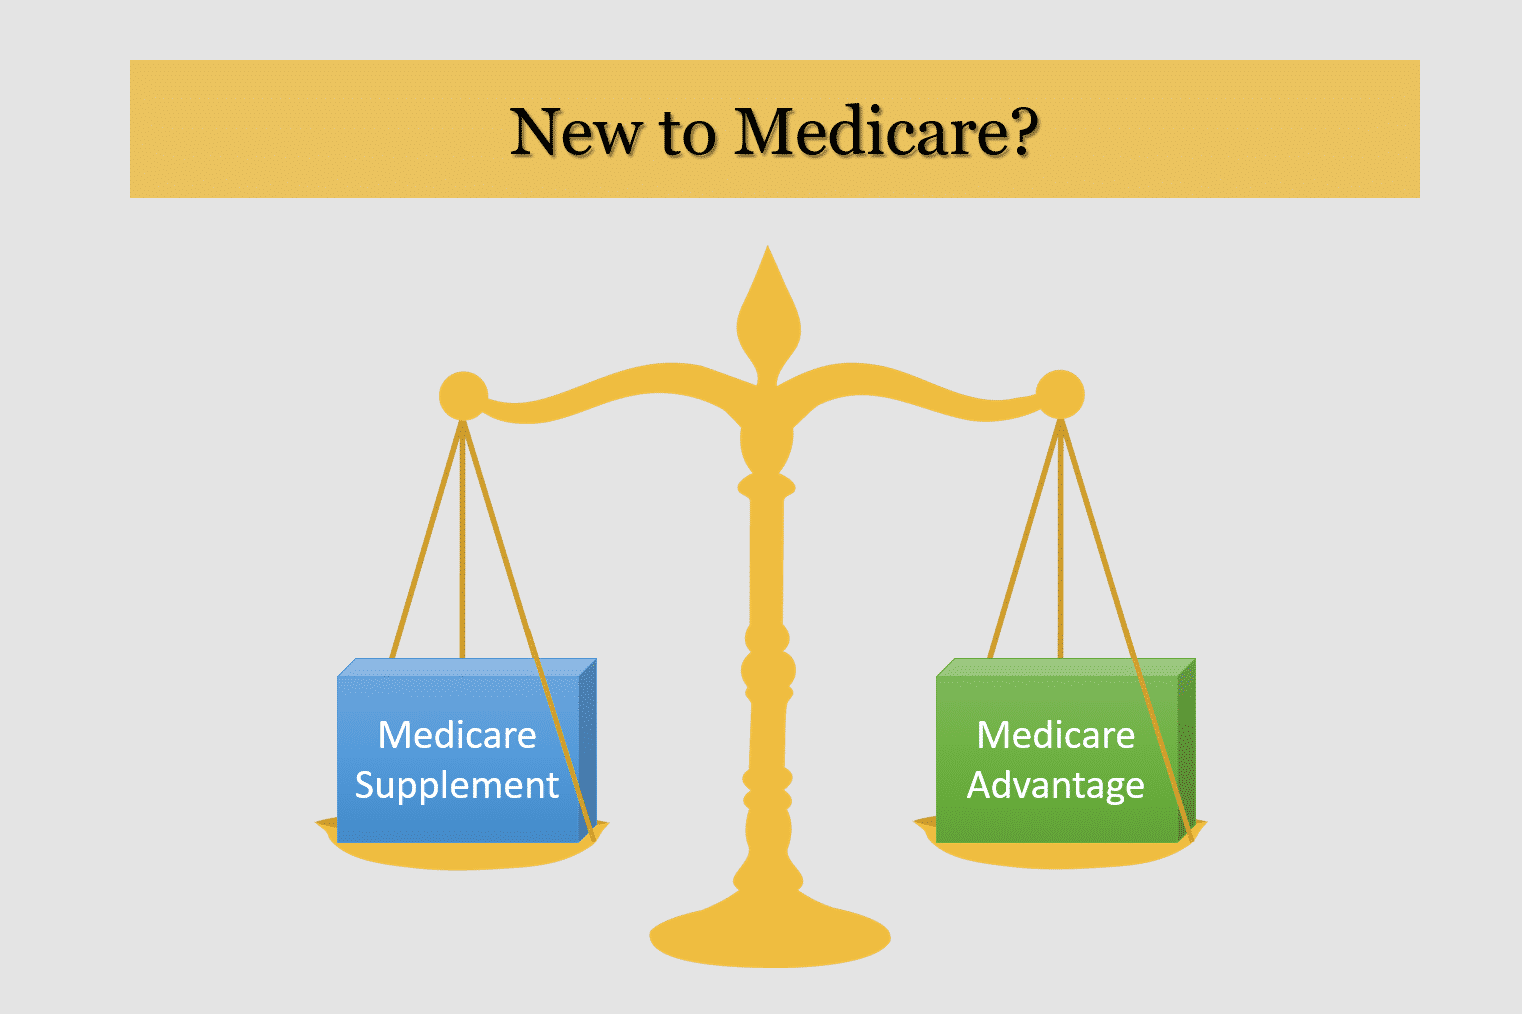 I’m New to Medicare. Should I Sign Up for a Medicare Advantage or Medicare Supplement Plan?